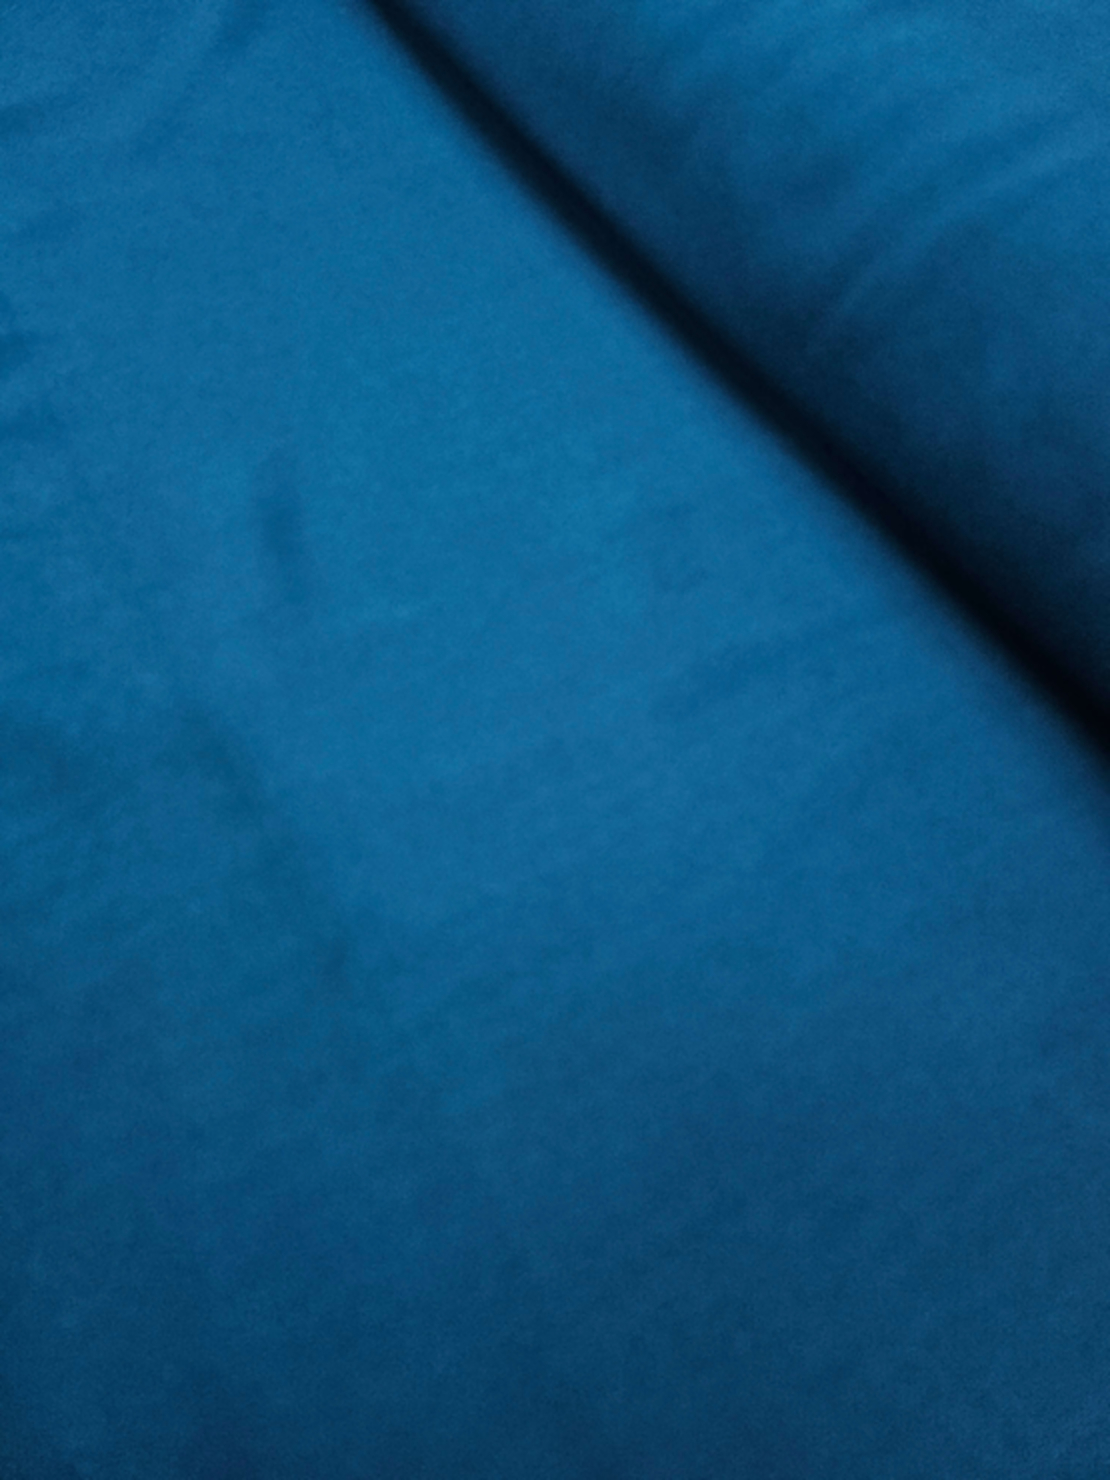 אריג ויסקוזה צבע כחול פטרול עמוק